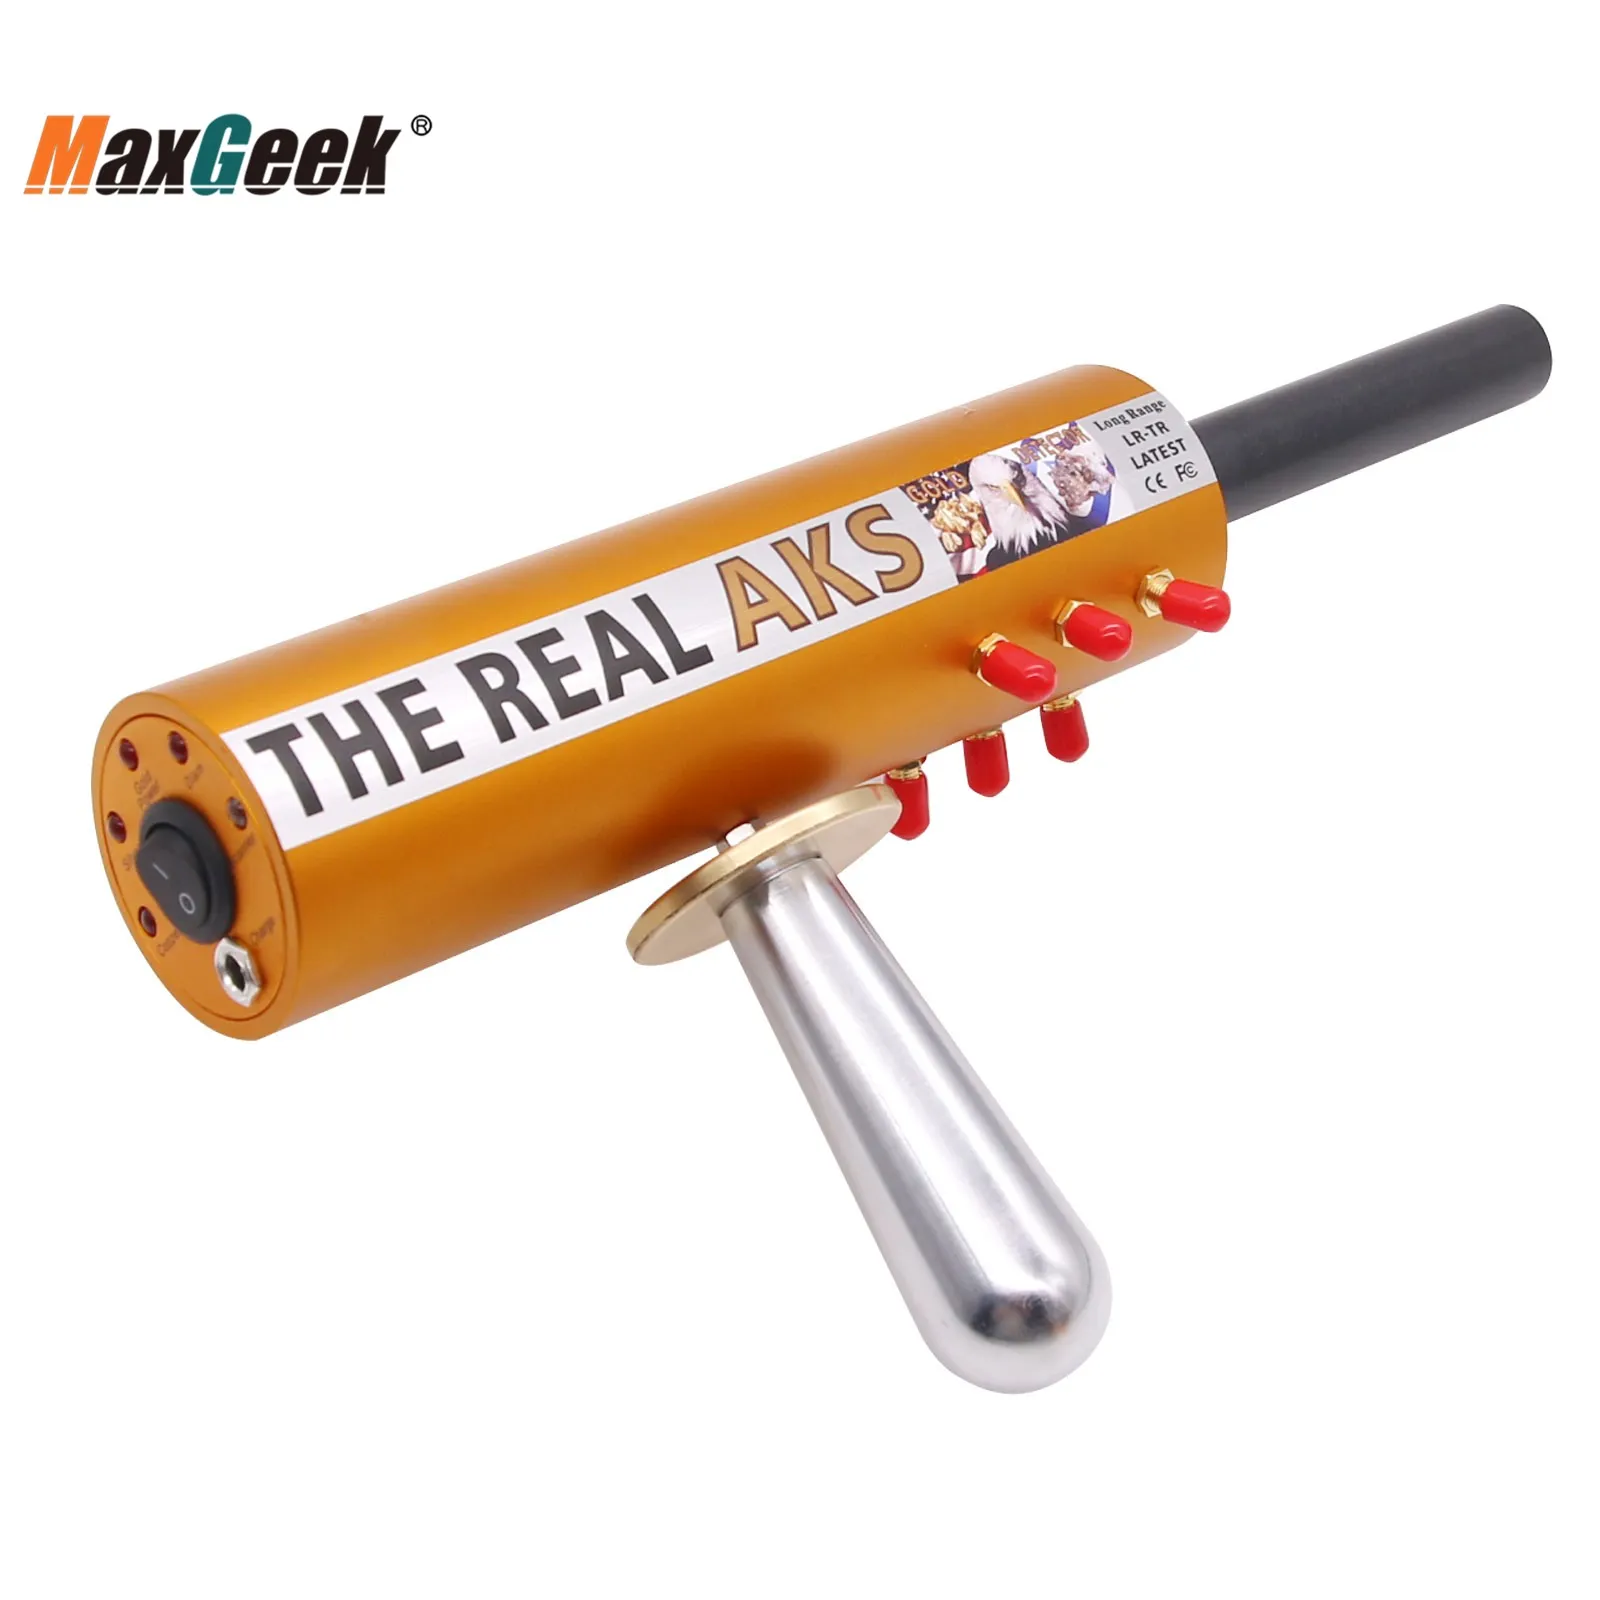 Maxgeek Real AKS Rază Lungă Detector de Metale Profesional 6 Antene Subterane de Aur Detector Gama de Căutare 1200M Adâncime 14M 3